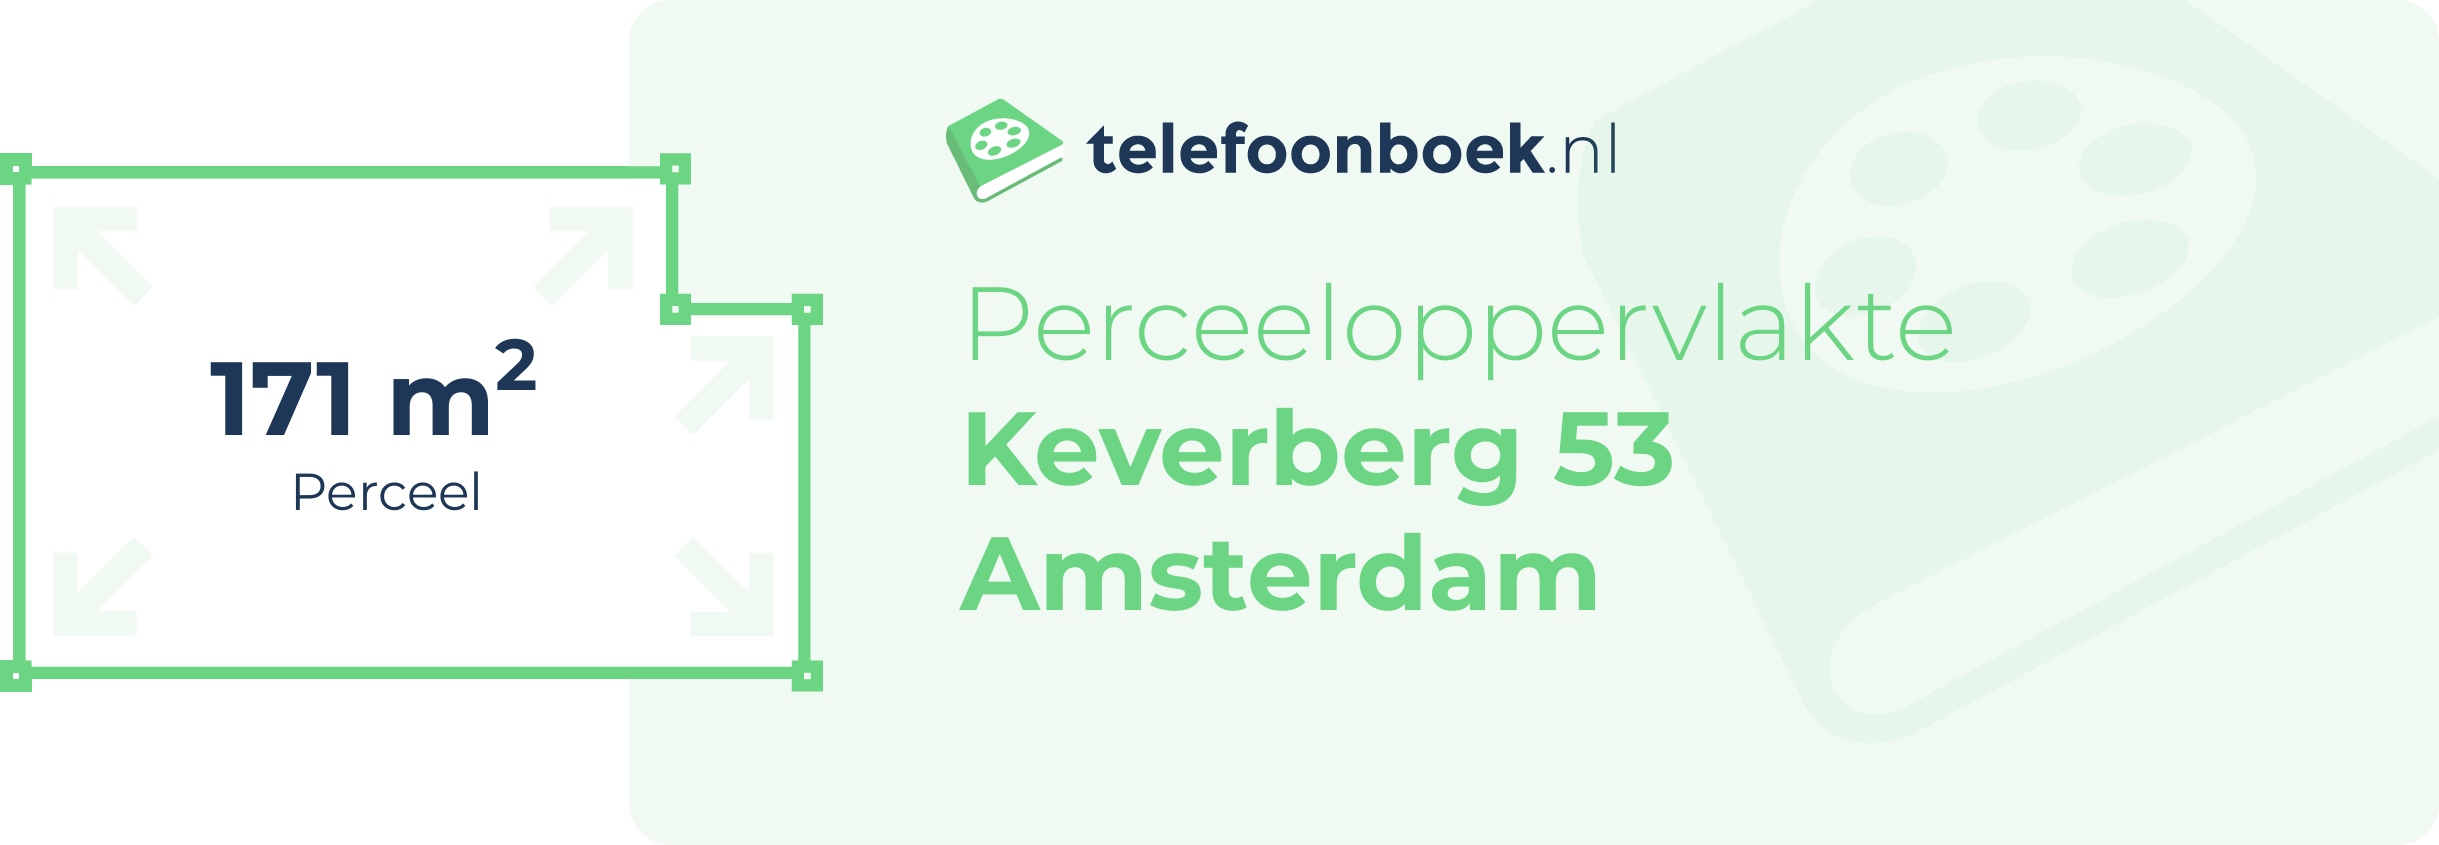 Perceeloppervlakte Keverberg 53 Amsterdam